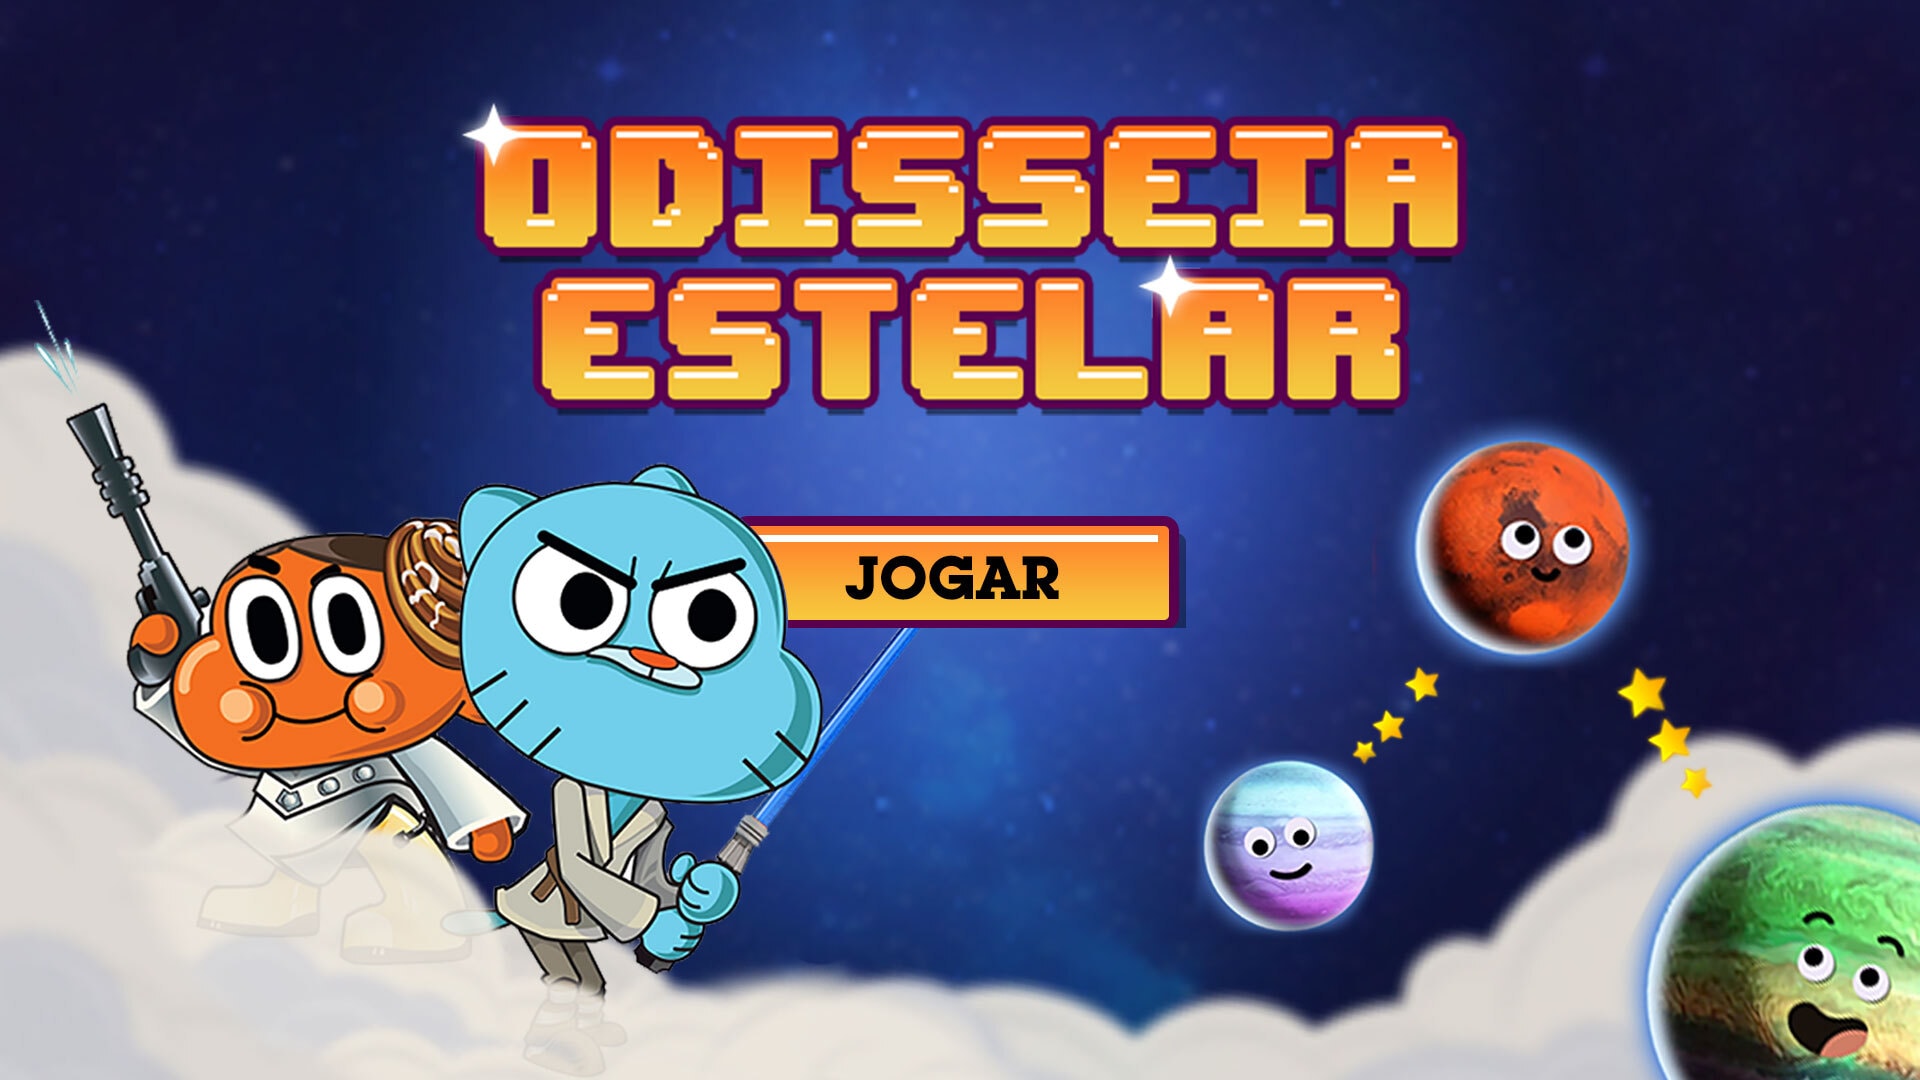 Odisseia Estelar, Jogos Gratuitos O Incrível Mundo de Gumball